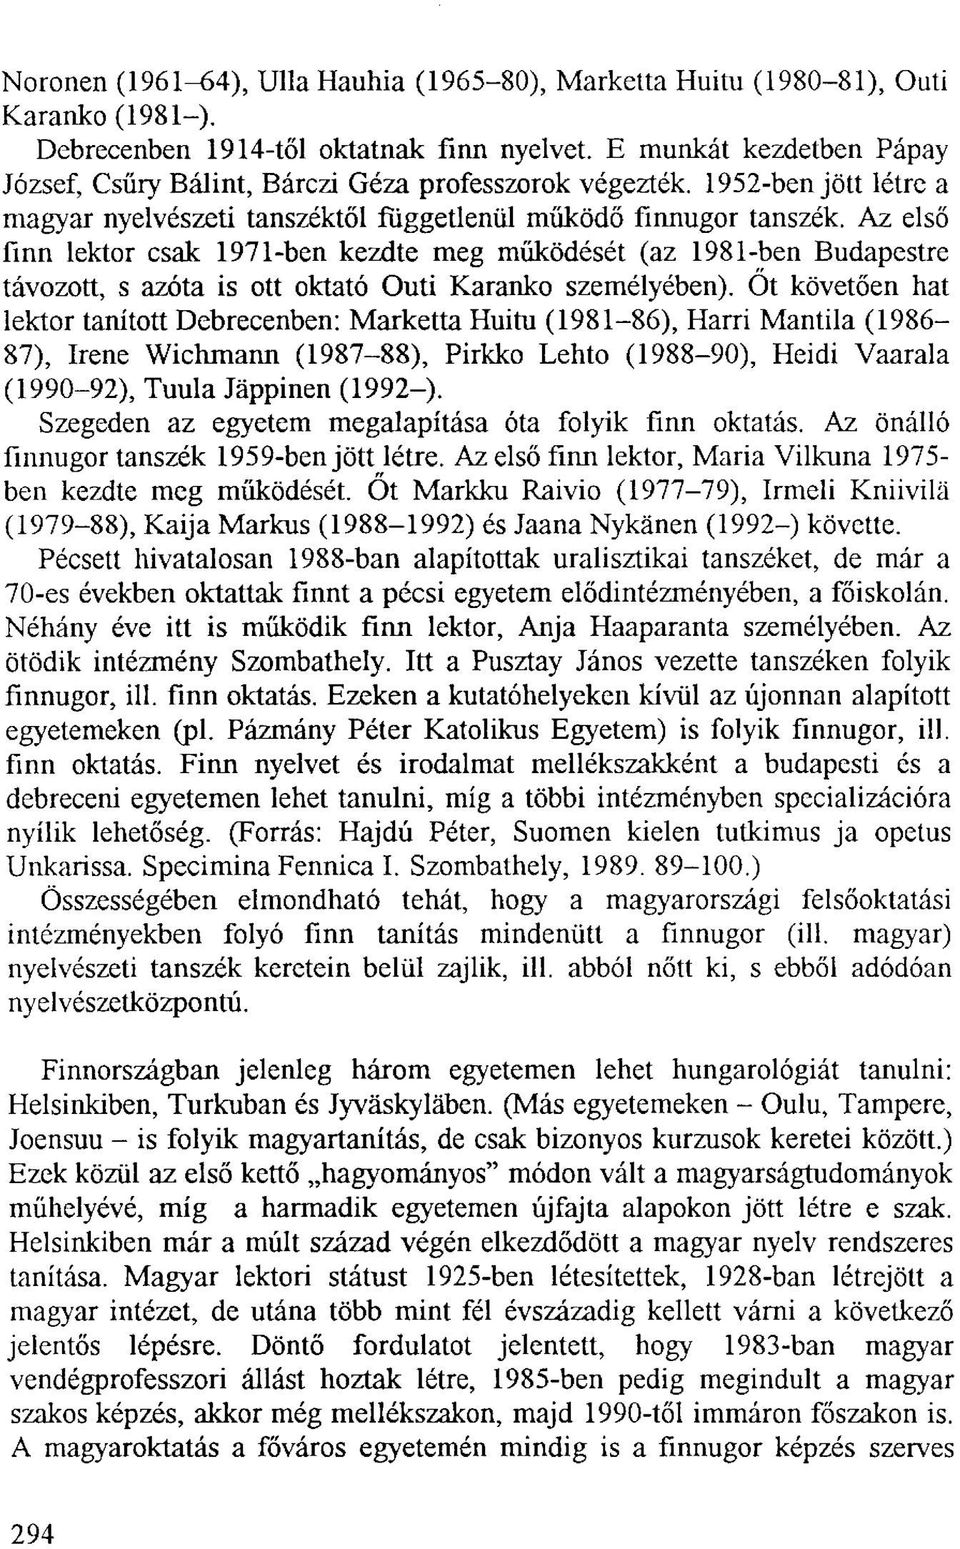 Az első finn lektor csak 1971-ben kezdte meg működését (az 1981-ben Budapestre távozott, s azóta is ott oktató Outi Karanko személyében).